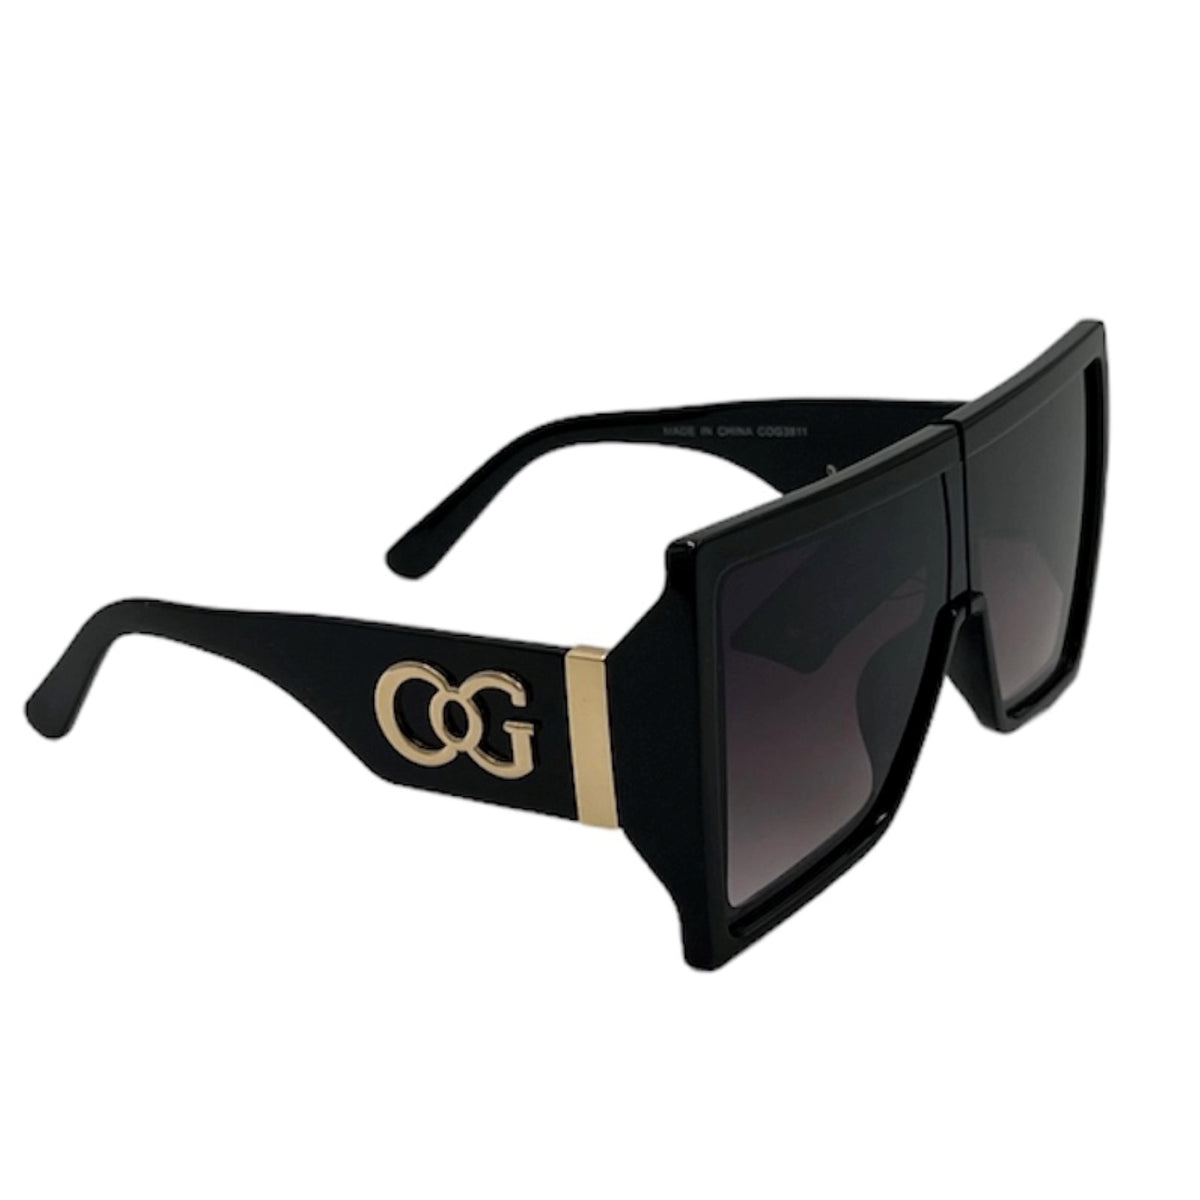 Les lunettes de soleil Cog Cogni Wear offrent une protection maximale contre les rayons UV, grâce à leur niveau de protection 400 contre les UVA &amp; UVB. Elles bloquent 100 % des rayons nocifs pour vous protéger des lésions oculaires et du vieillissement cutané prématuré.